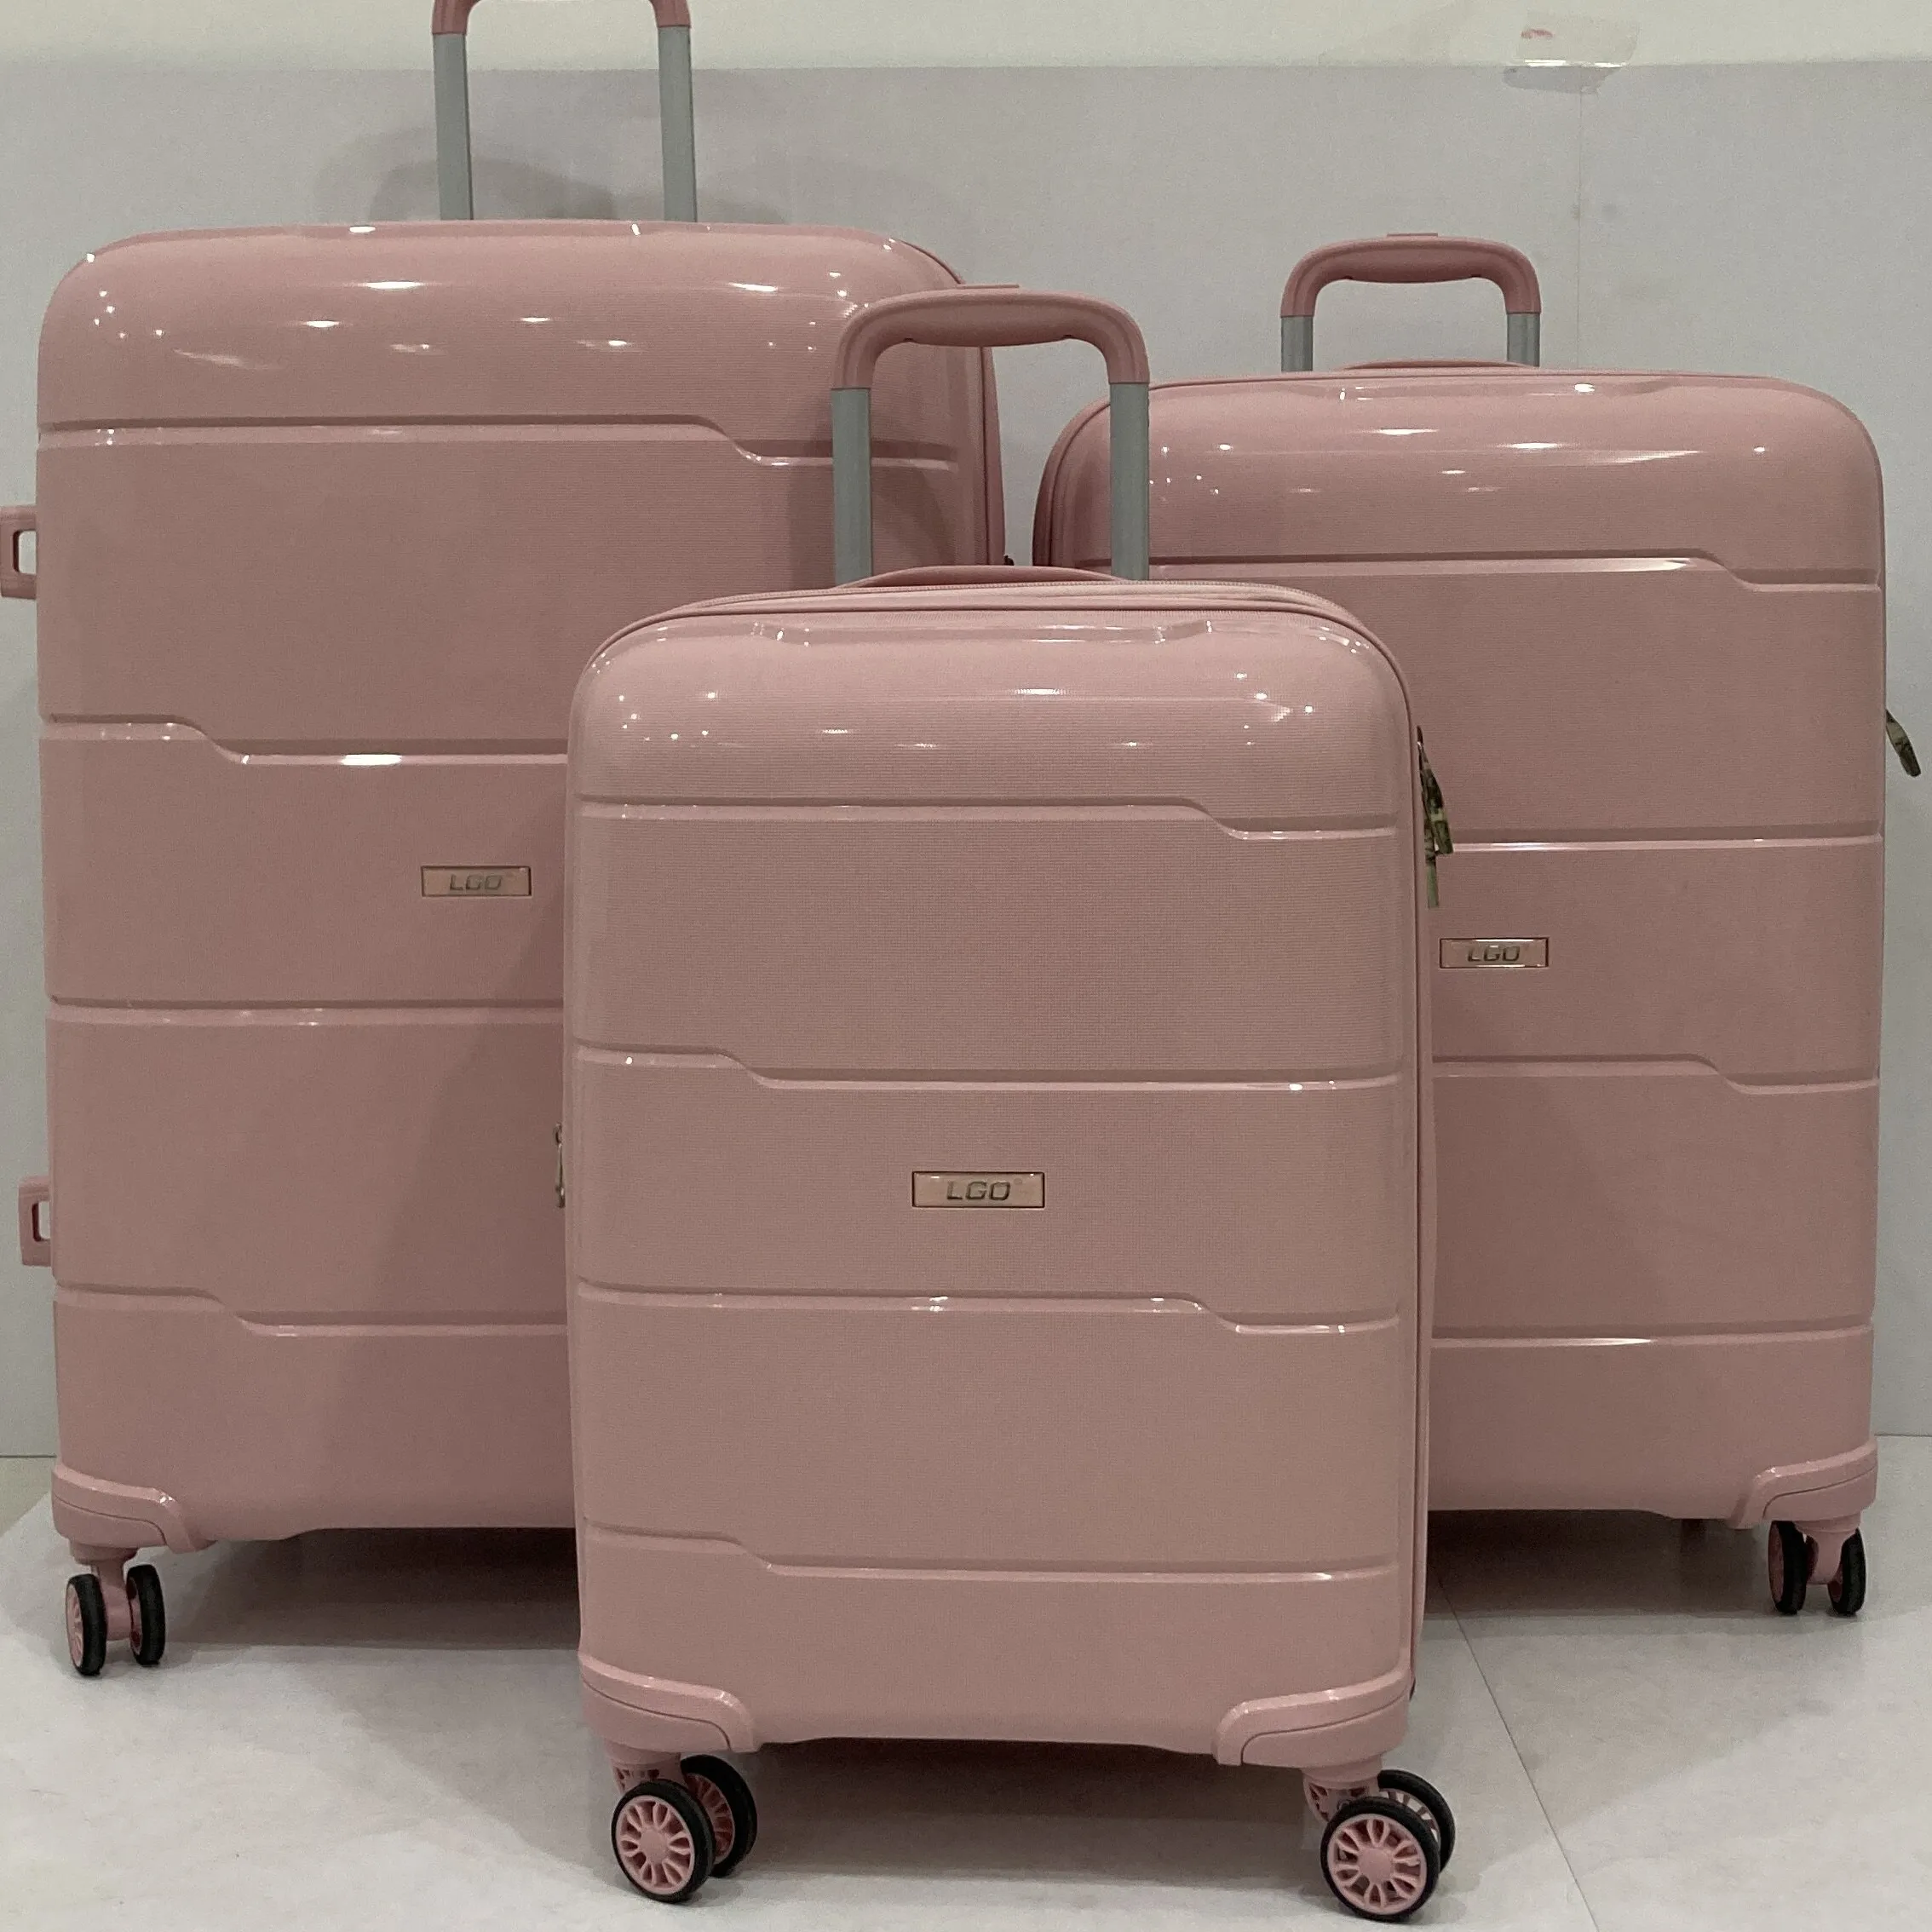 Fabricante preço full color matching unisex viagem trole bagagem pp bagagem mala conjuntos silencioso roda bagagem spinner caso